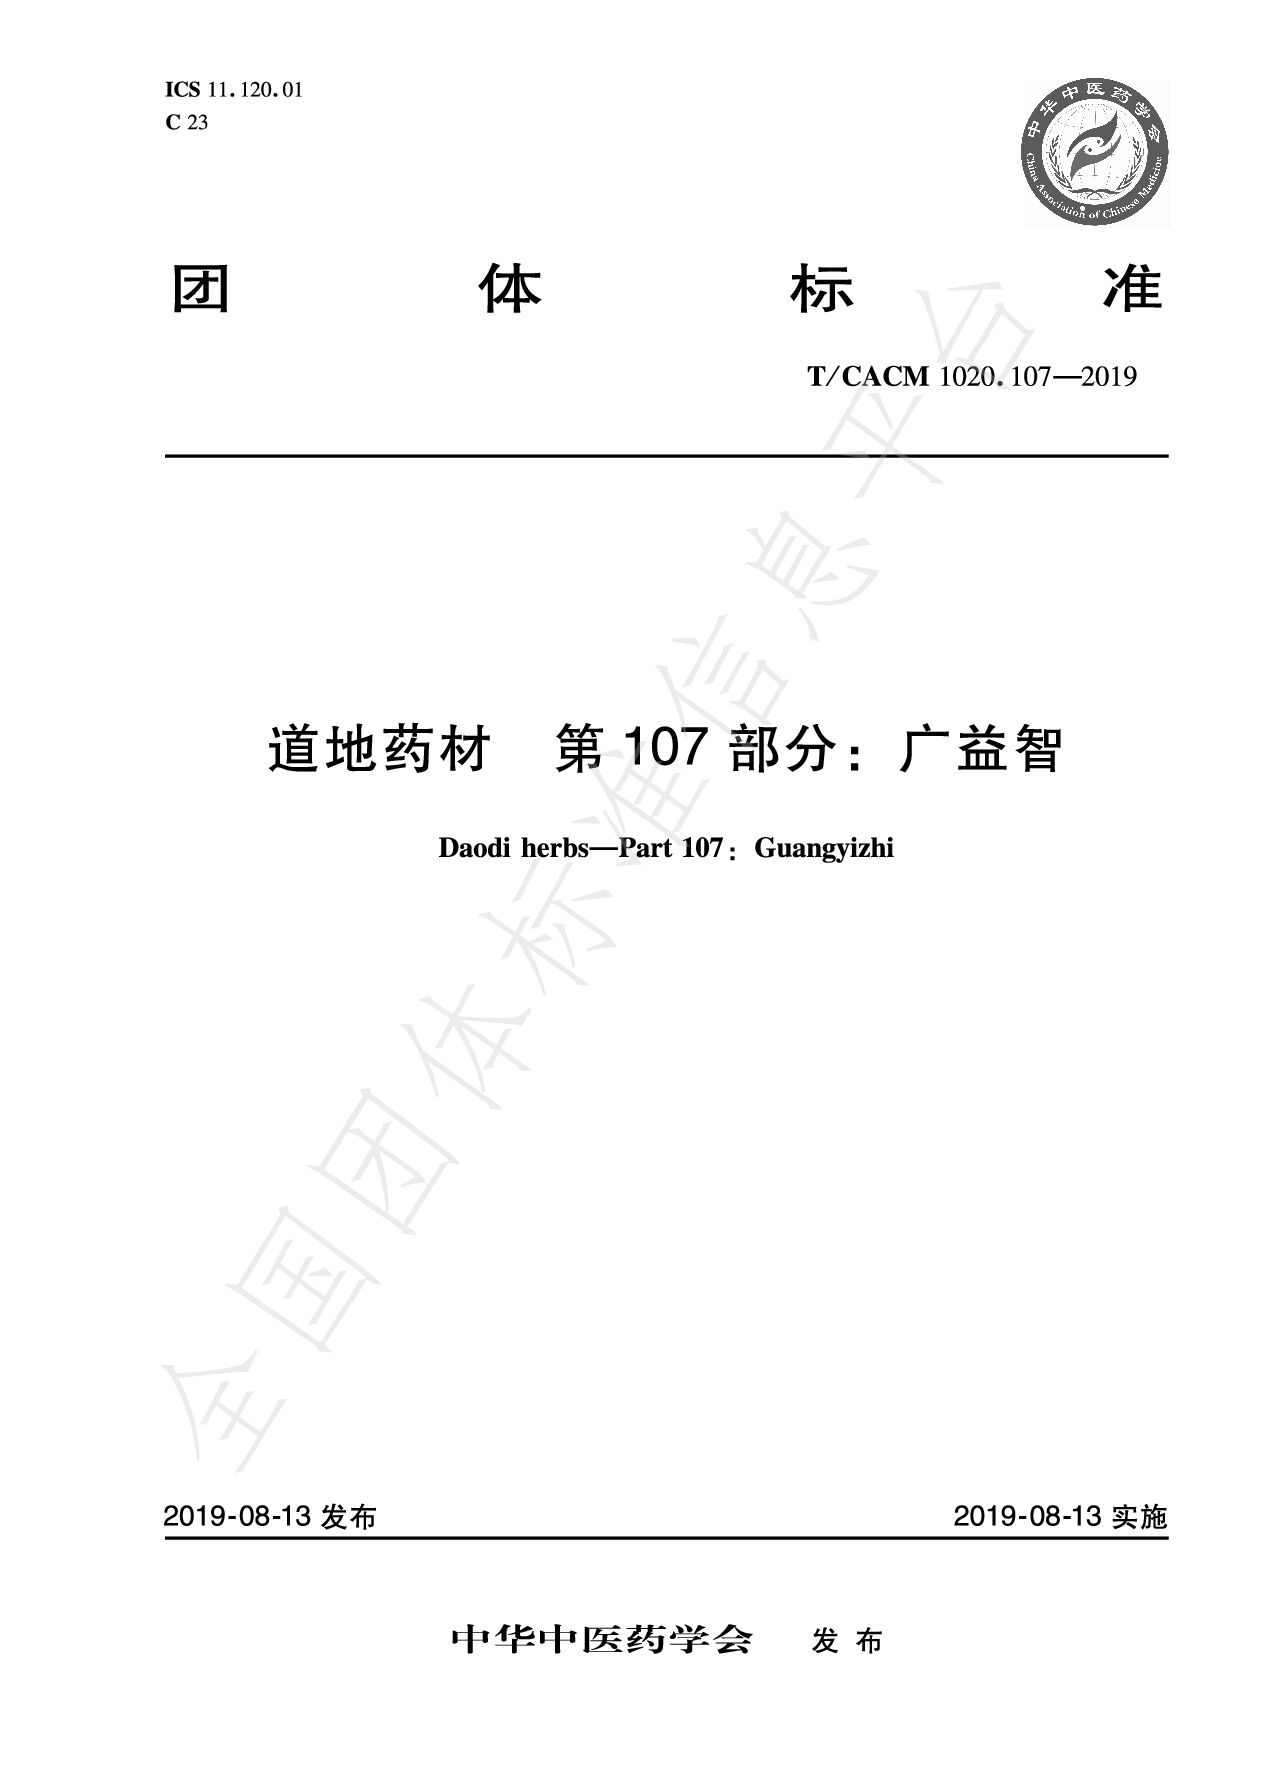 T/CACM 1020.107—2019